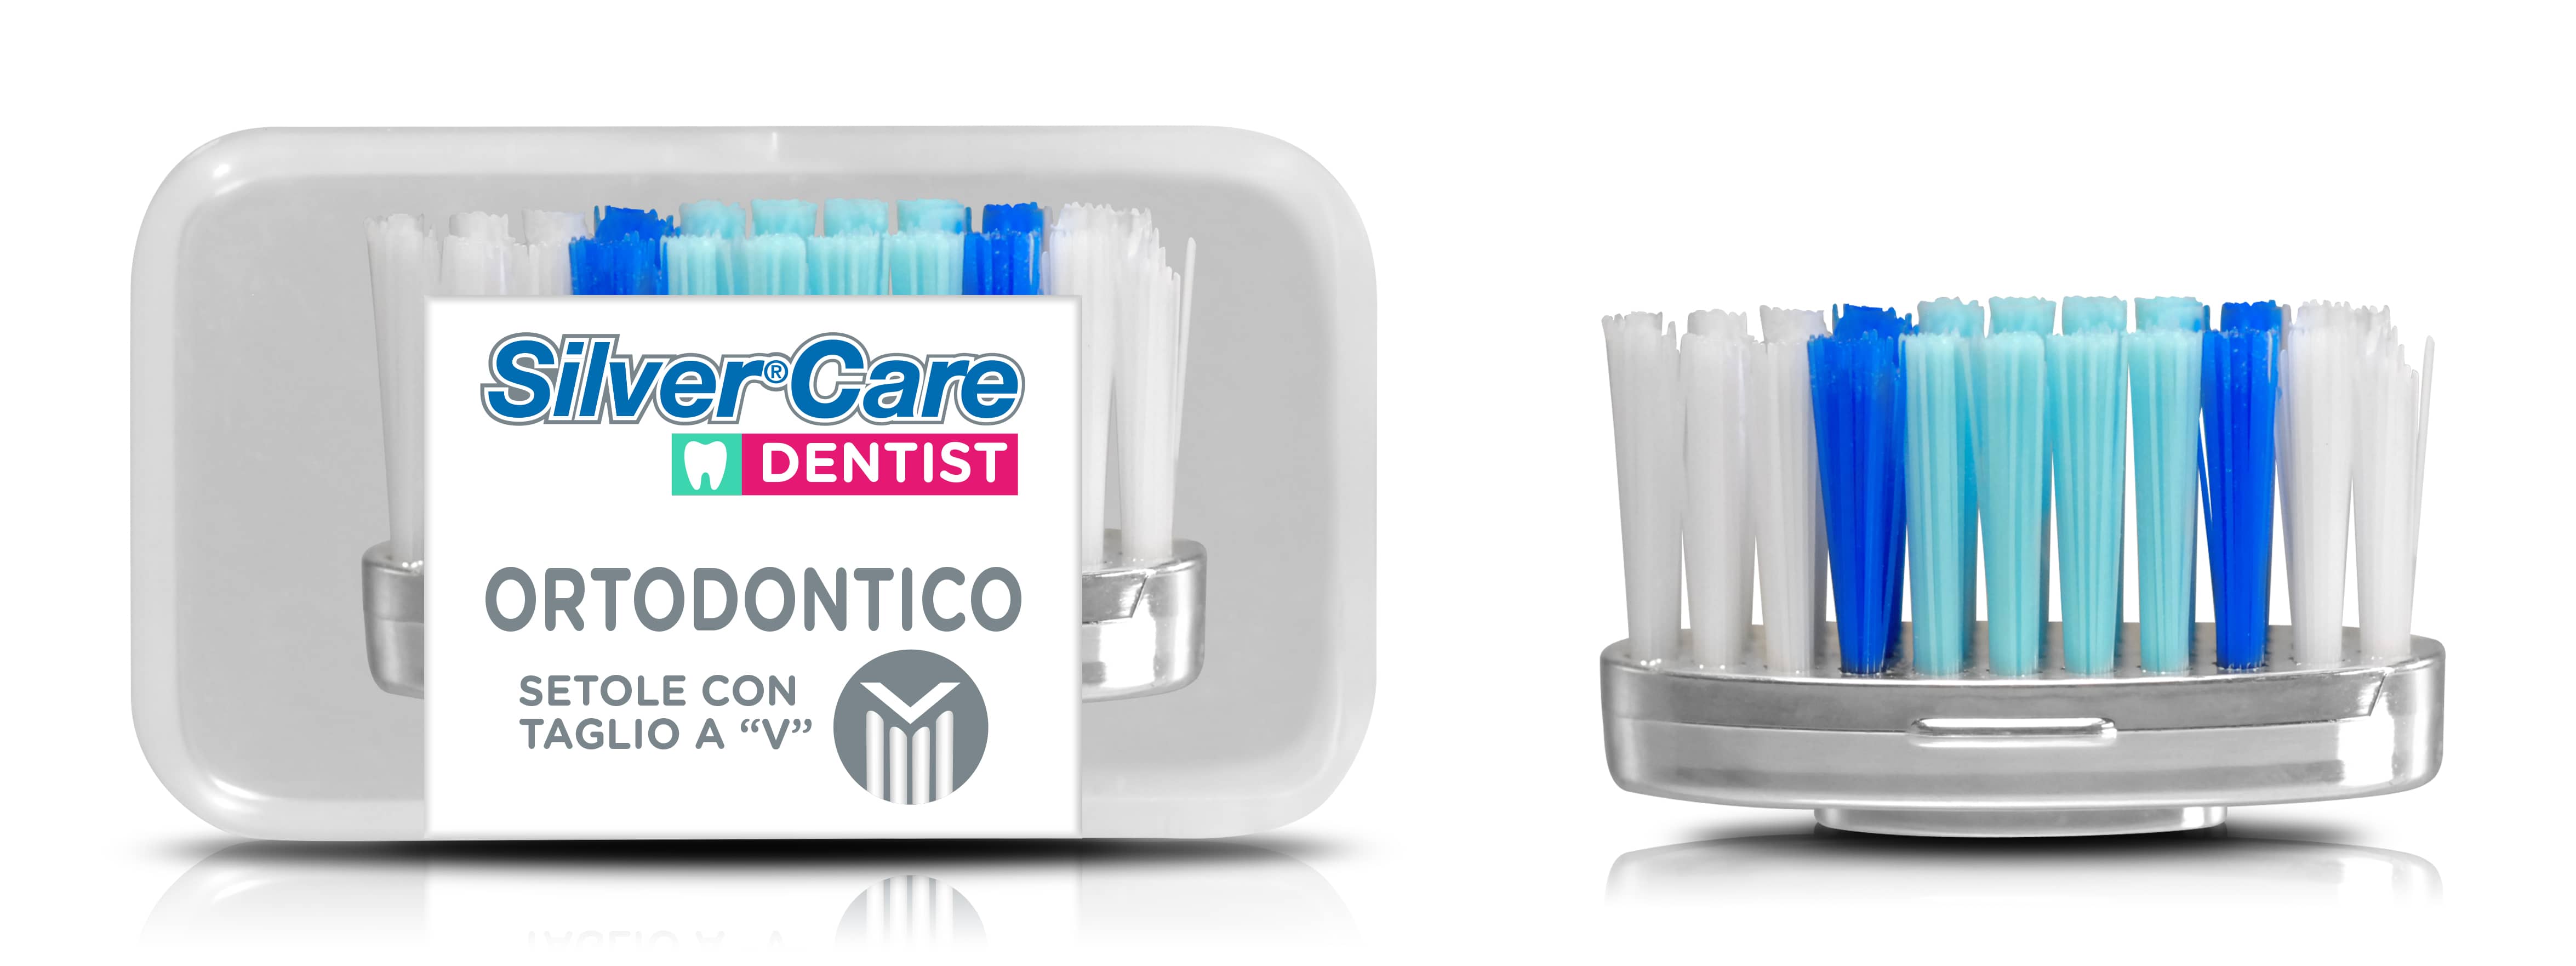 Testina Ortodontica per spazzolino SilverCare Dentist